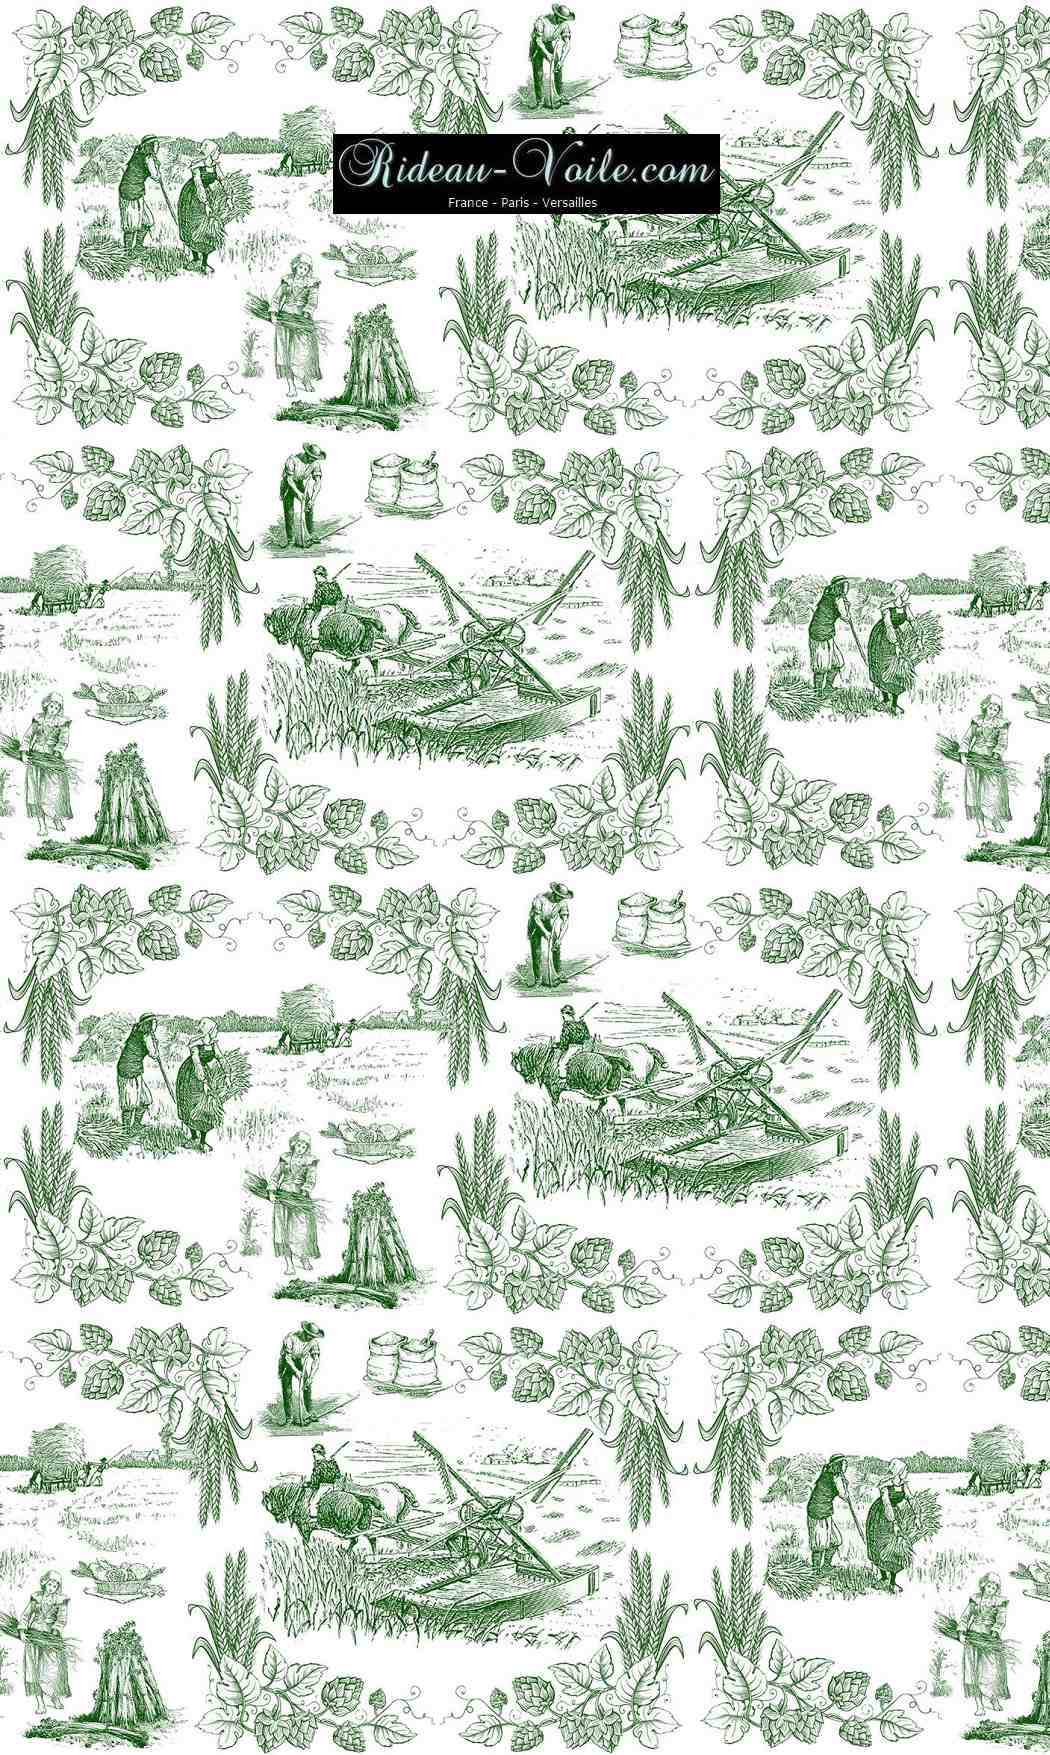 Toile de Jouy tissu au mètre ameublement textile Paris Versailles Yvelines decoration french pattern haut gamme vert green